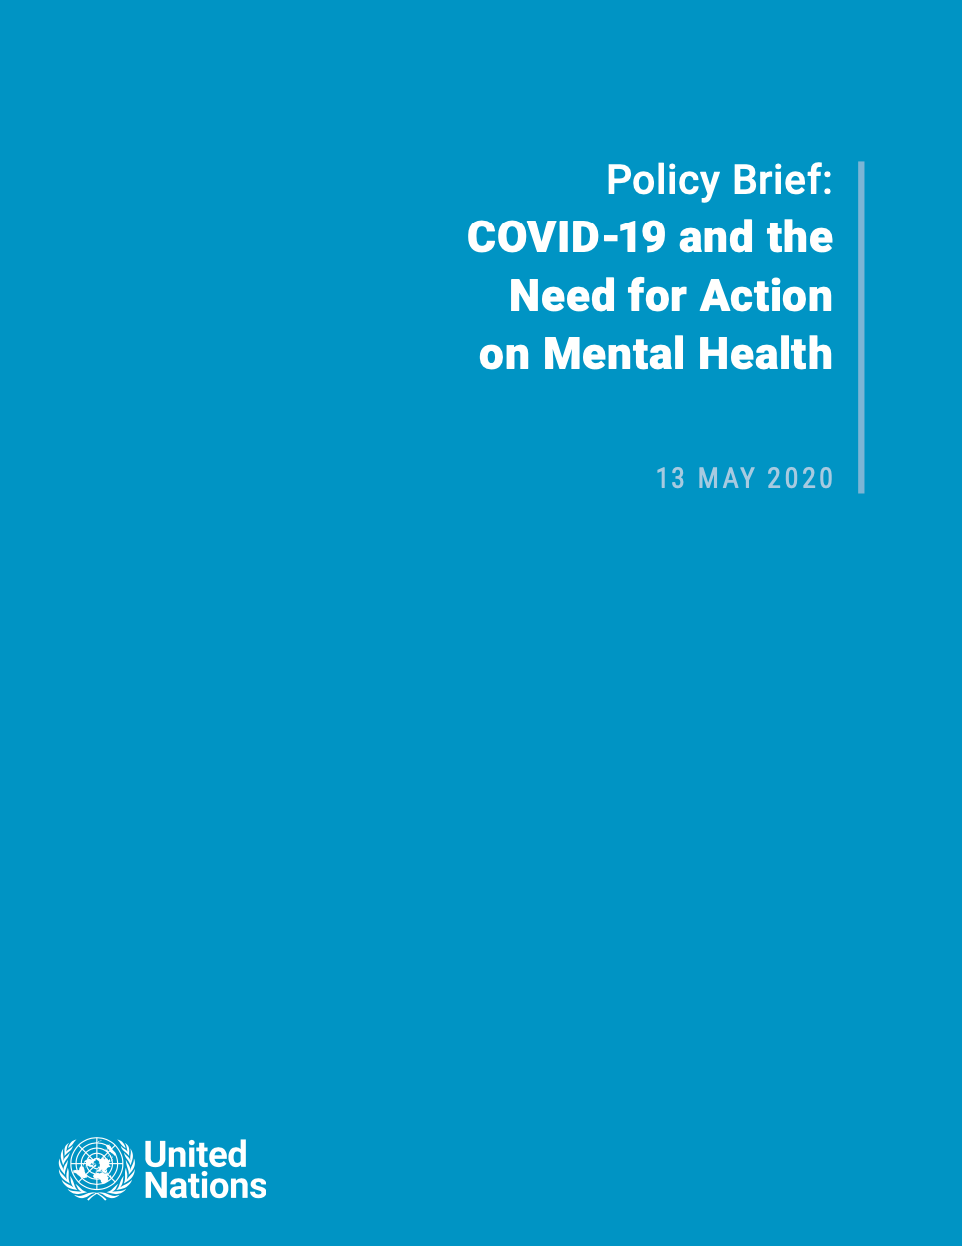 UN policy brief COVID-19 and mental health